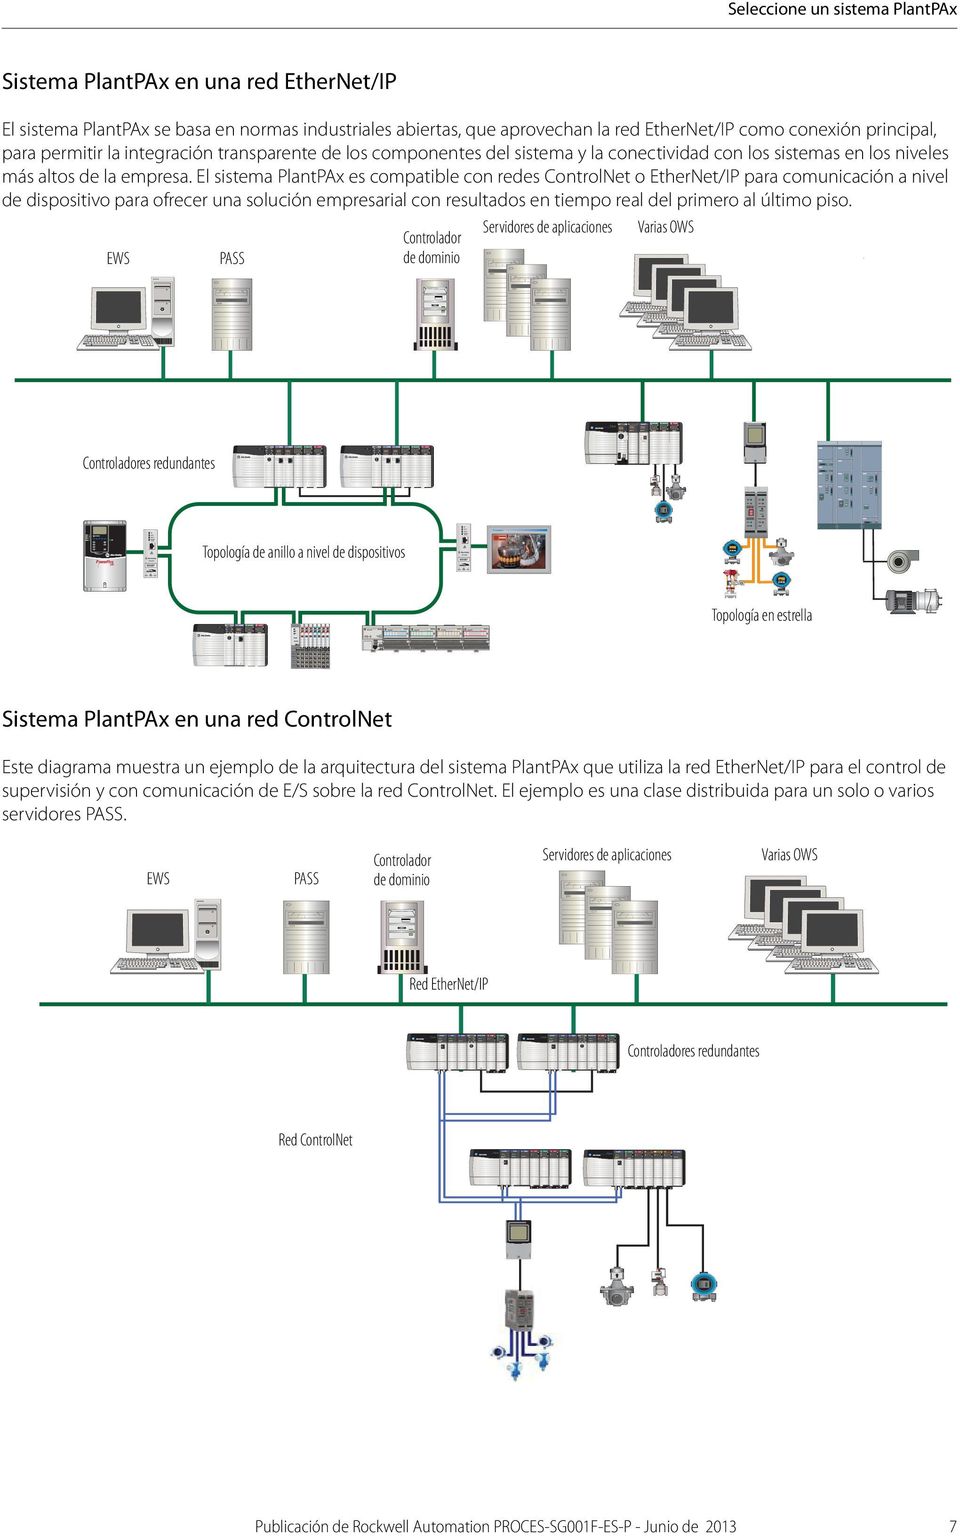 El sistema PlantPAx es compatible con redes ControlNet o EtherNet/IP para comunicación a nivel de dispositivo para ofrecer una solución empresarial con resultados en tiempo real del primero al último